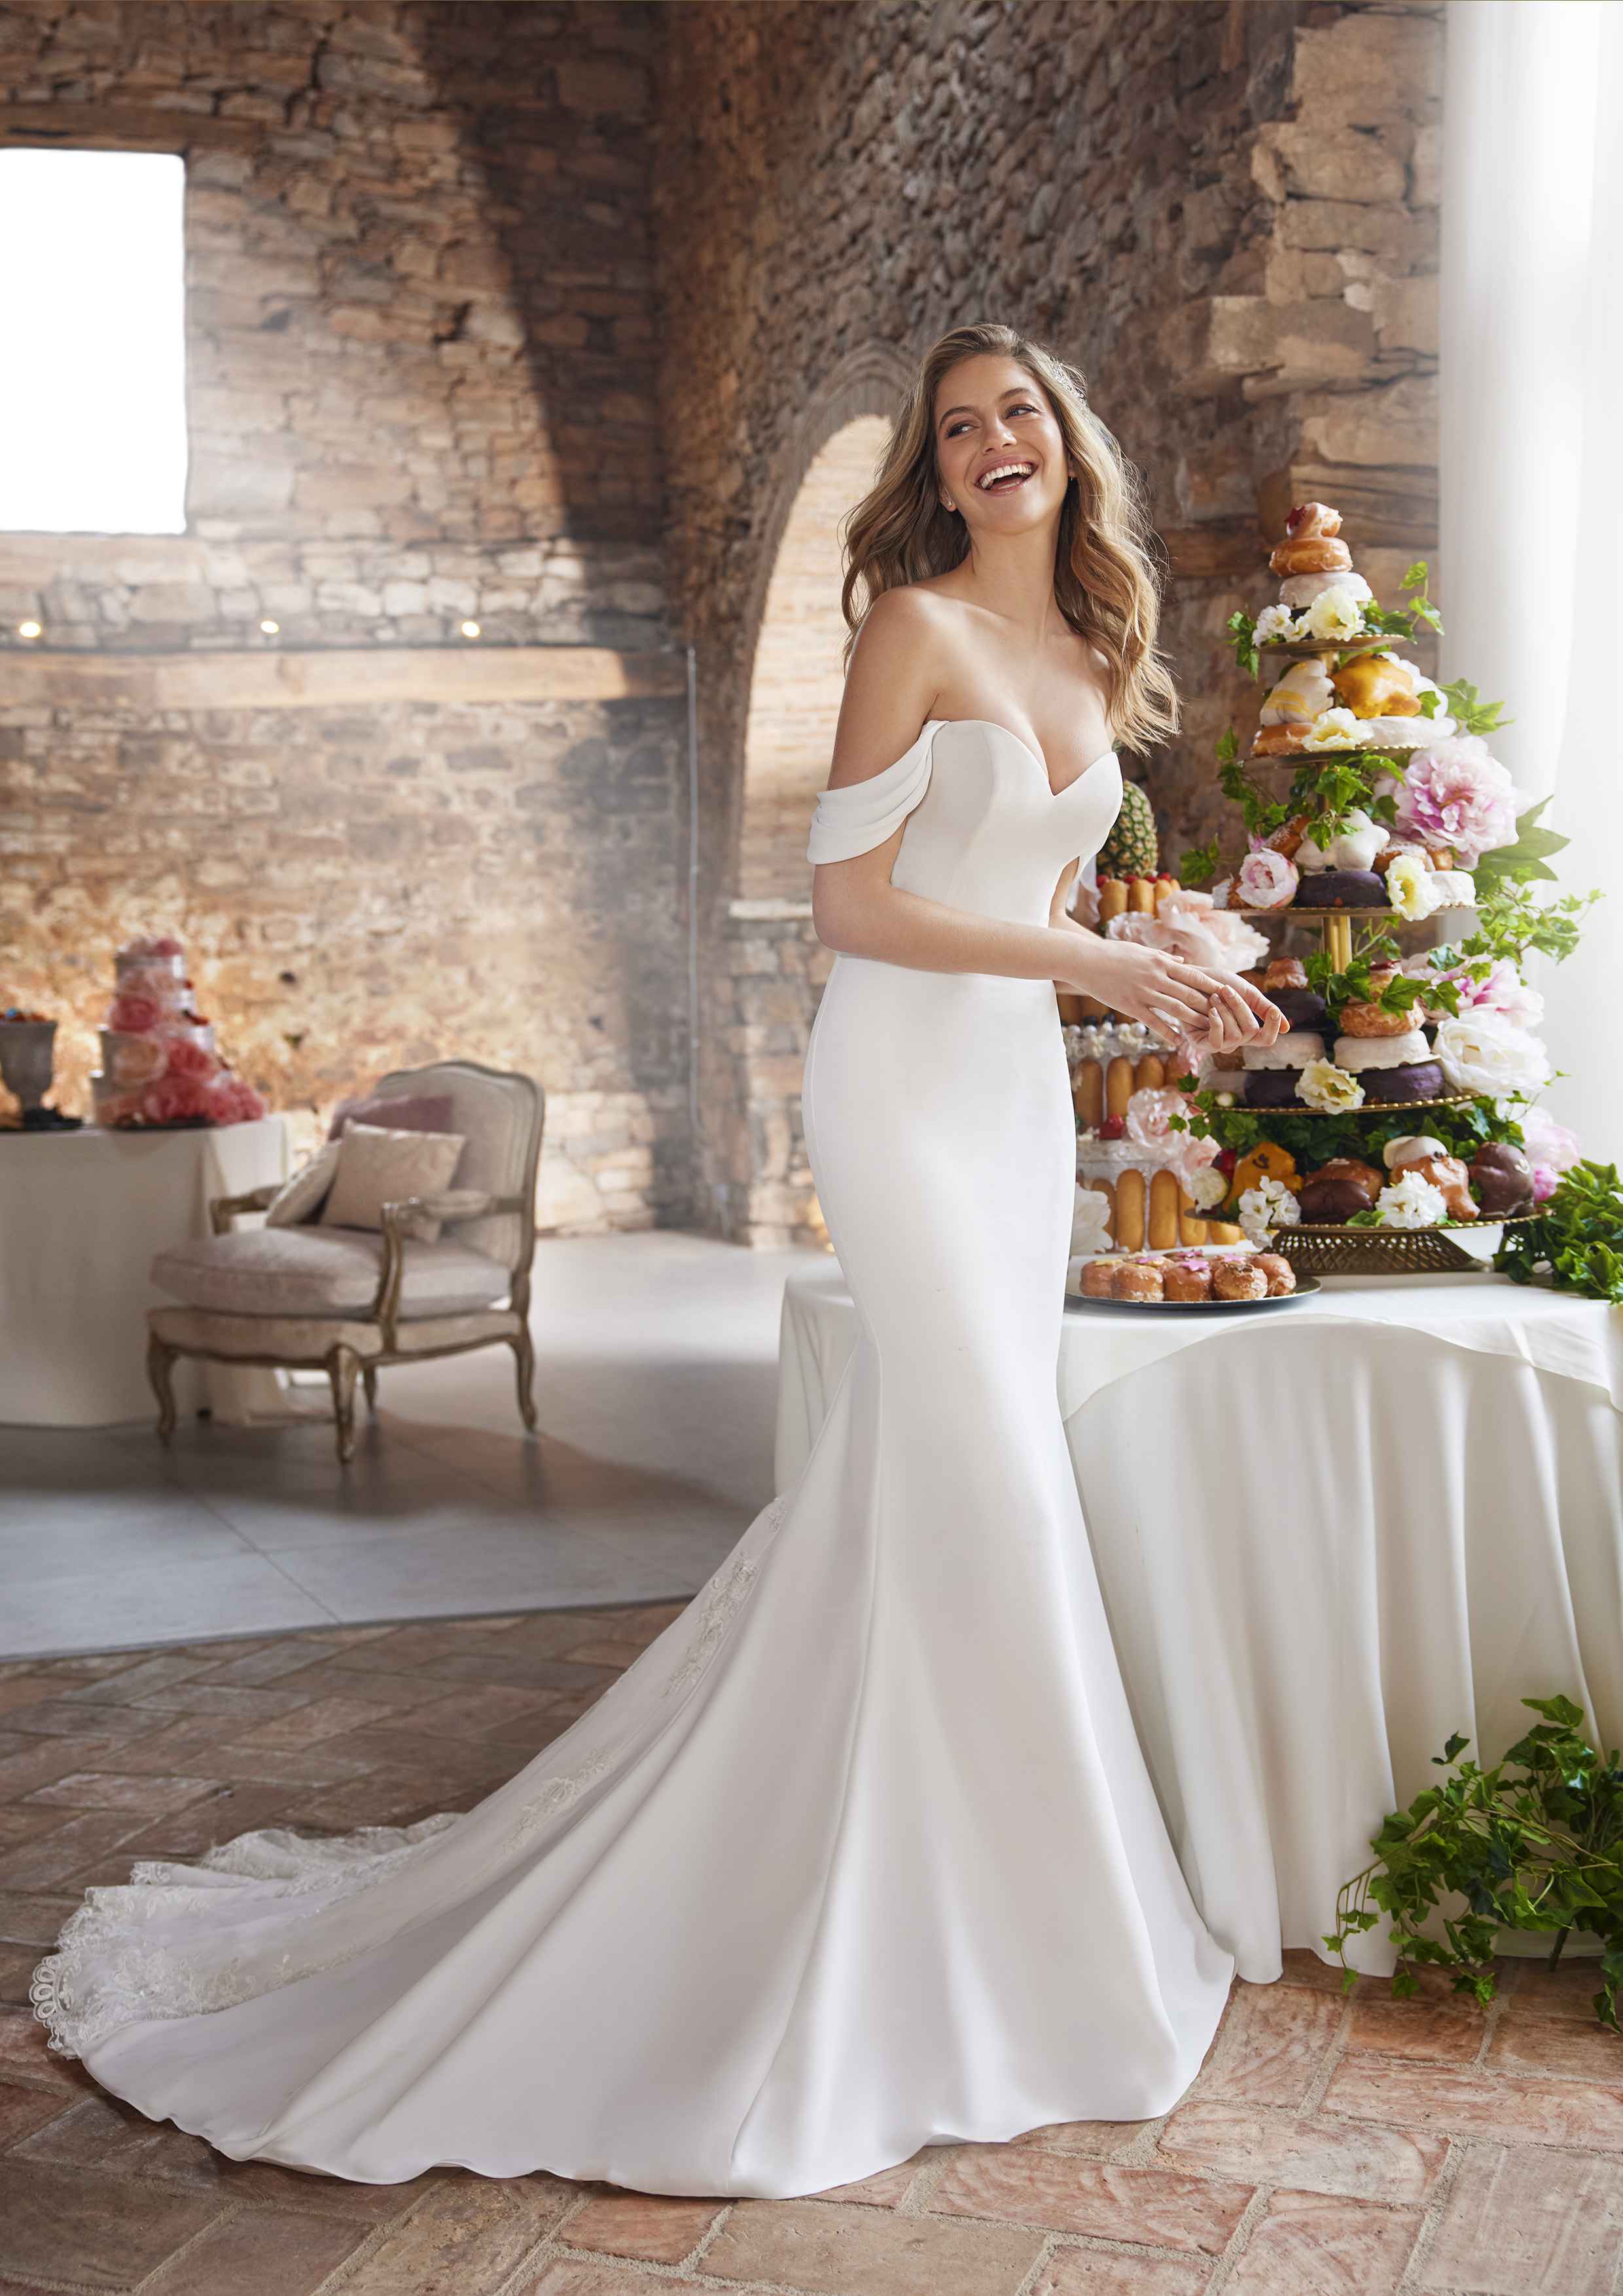 Modell im Hochzeitskleid